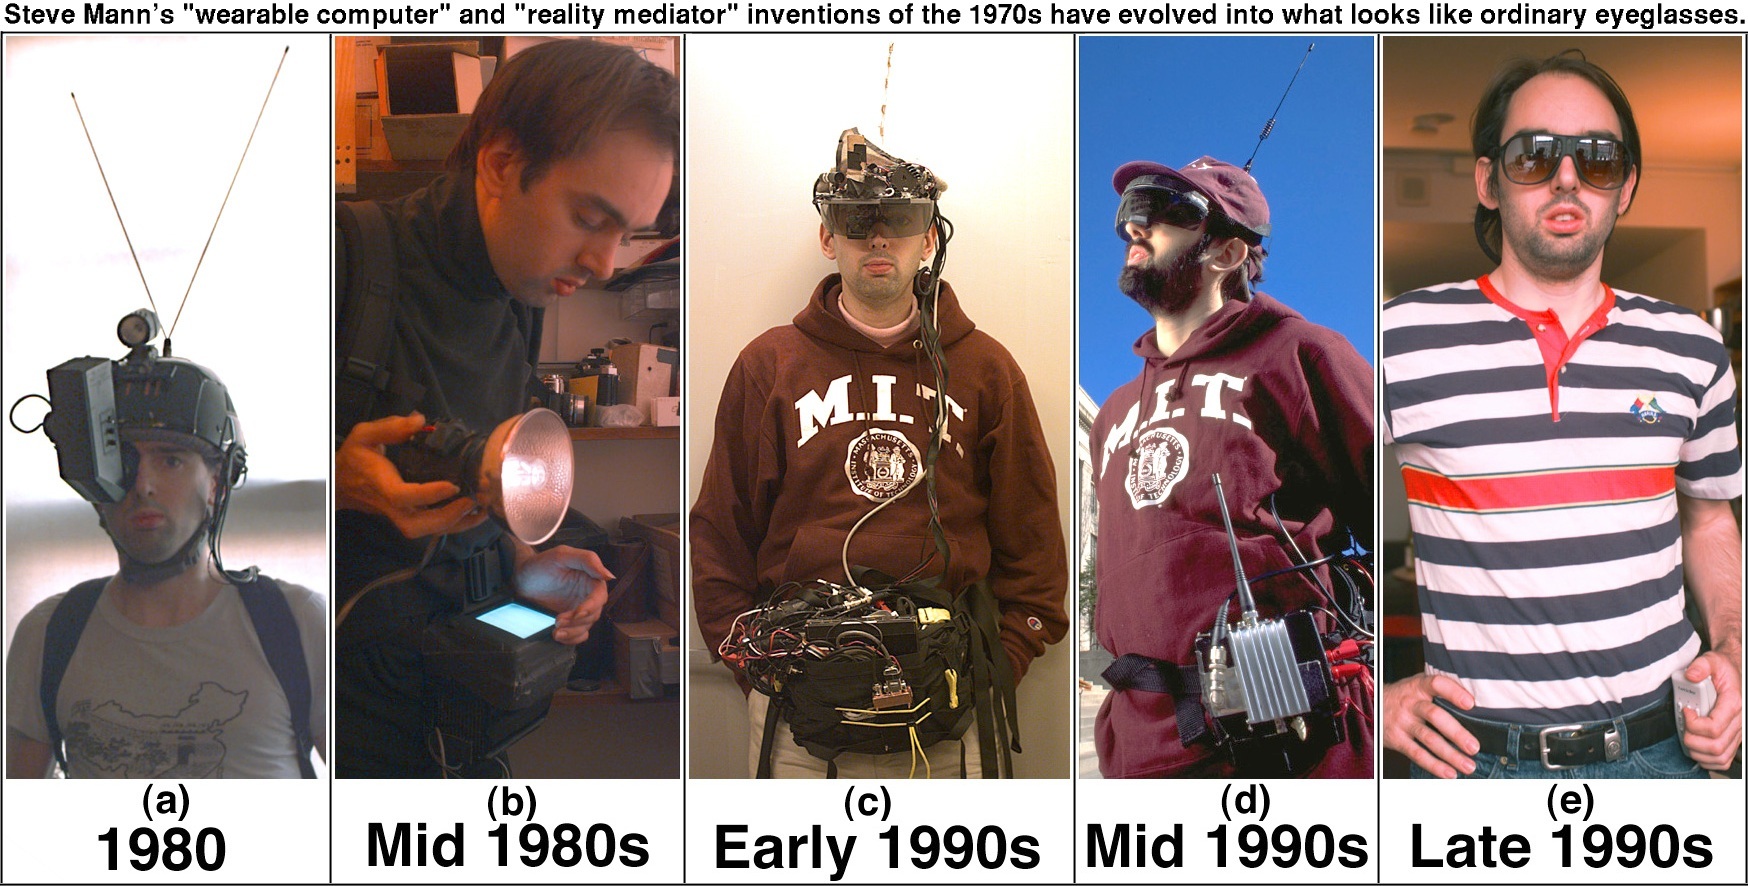 Steve-mann-evolution-of-wearable.jpg